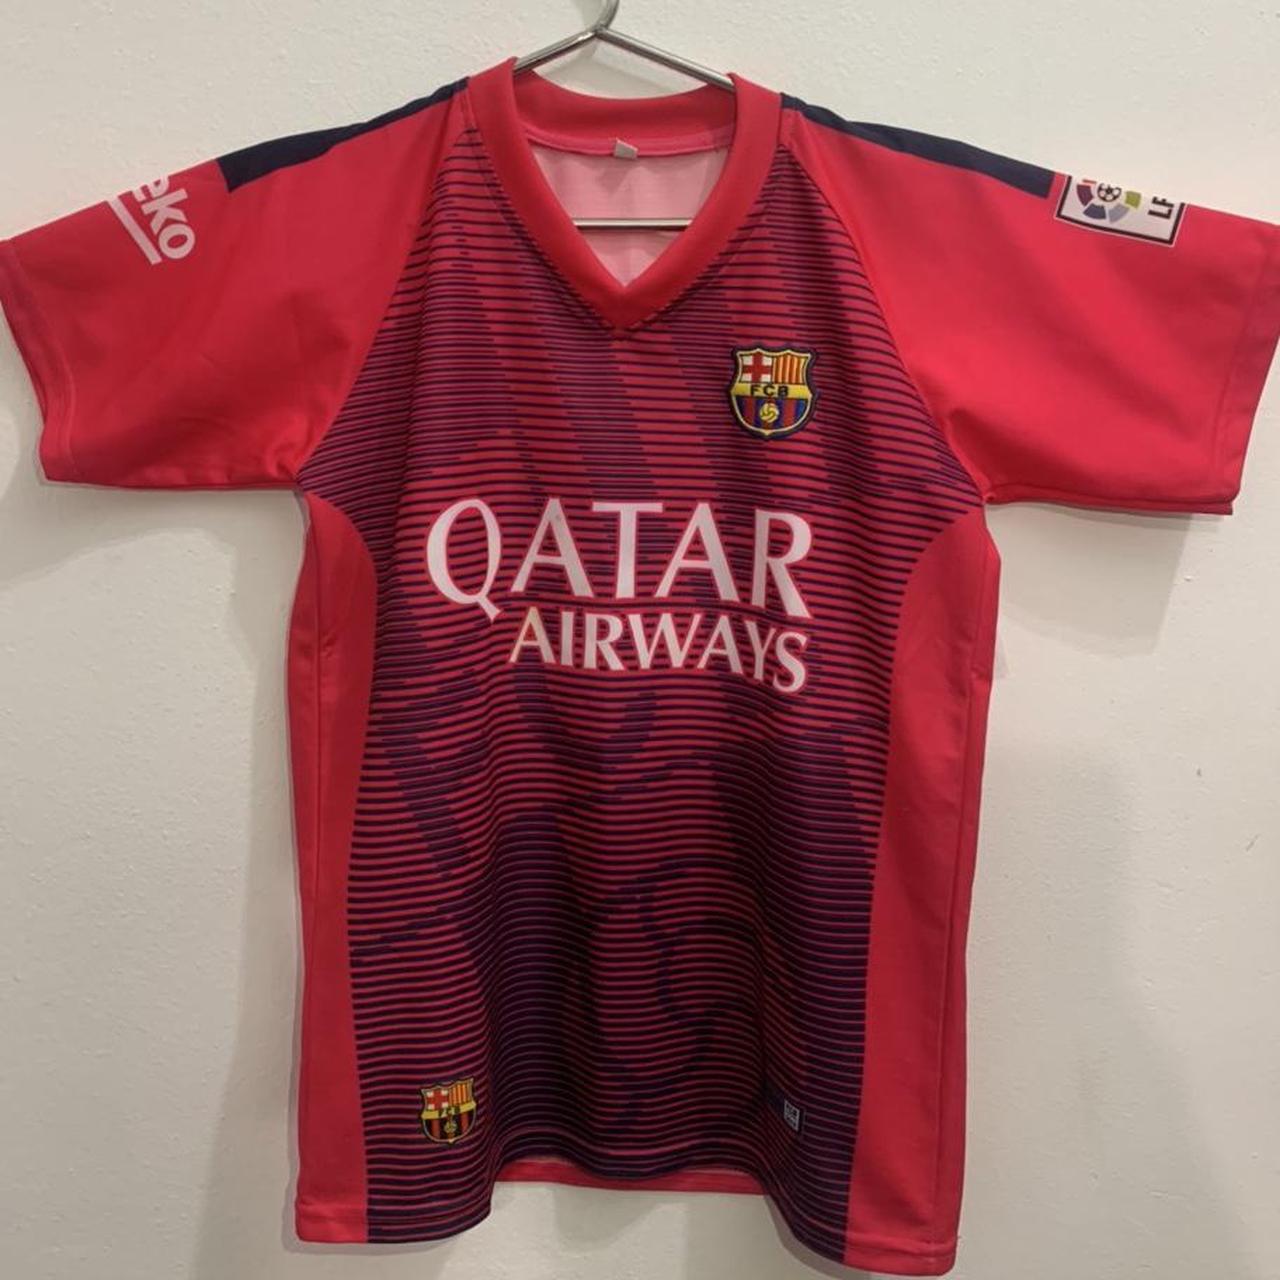 FCB / FC Barcelona Qatar Airways Unicef Messi 10... - Depop